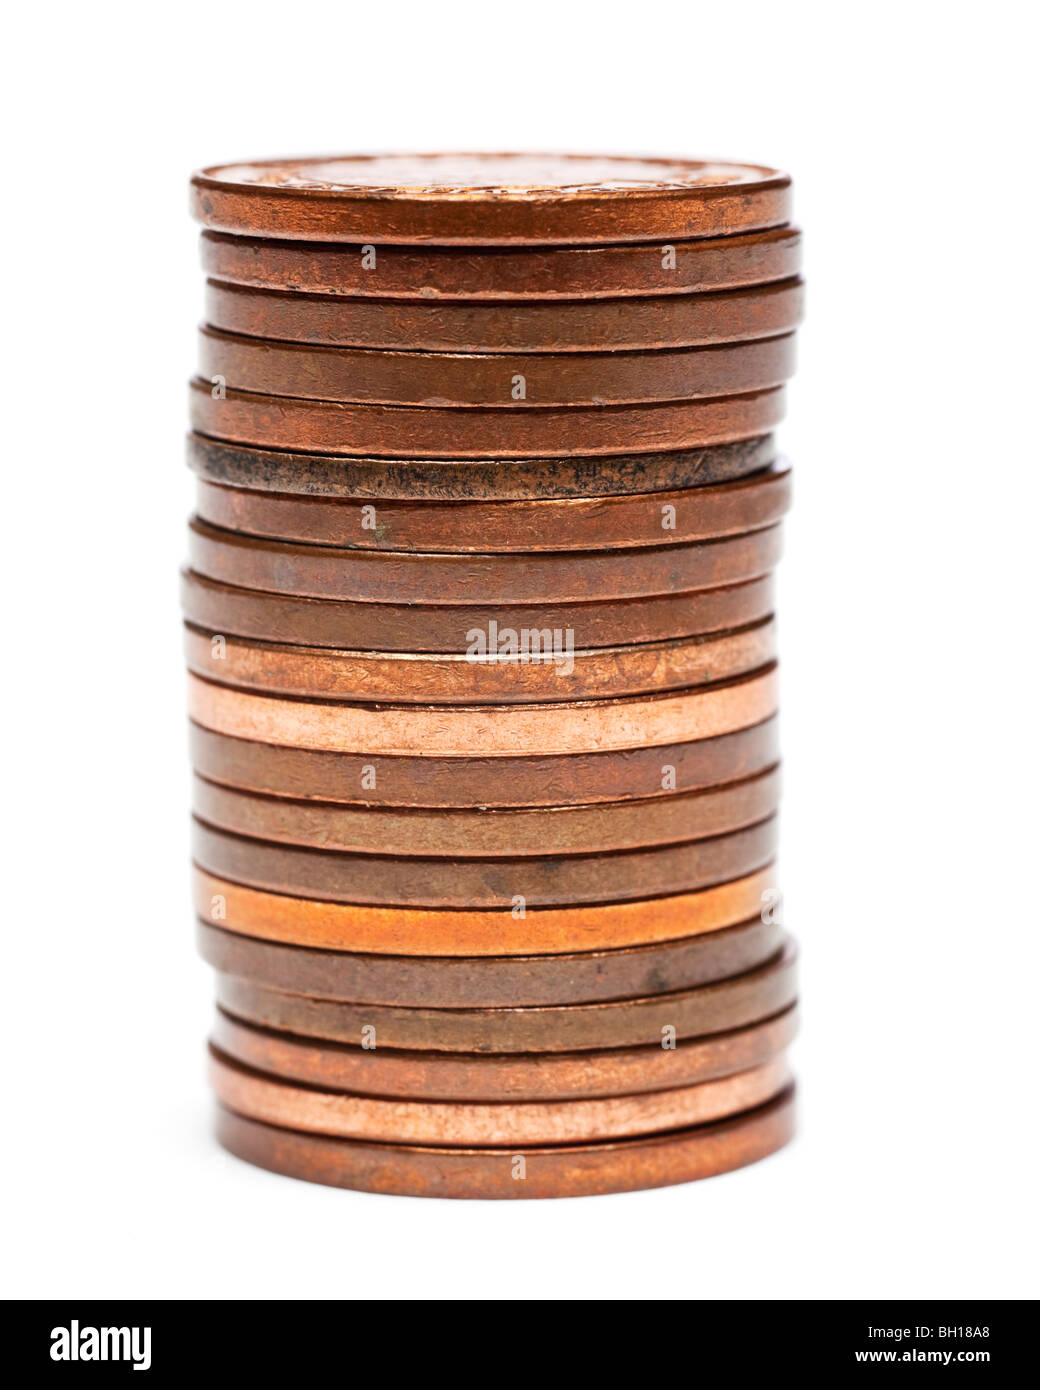 Stapel von britischen ein Pence-Stücke hautnah selektiven Fokus Stockfoto